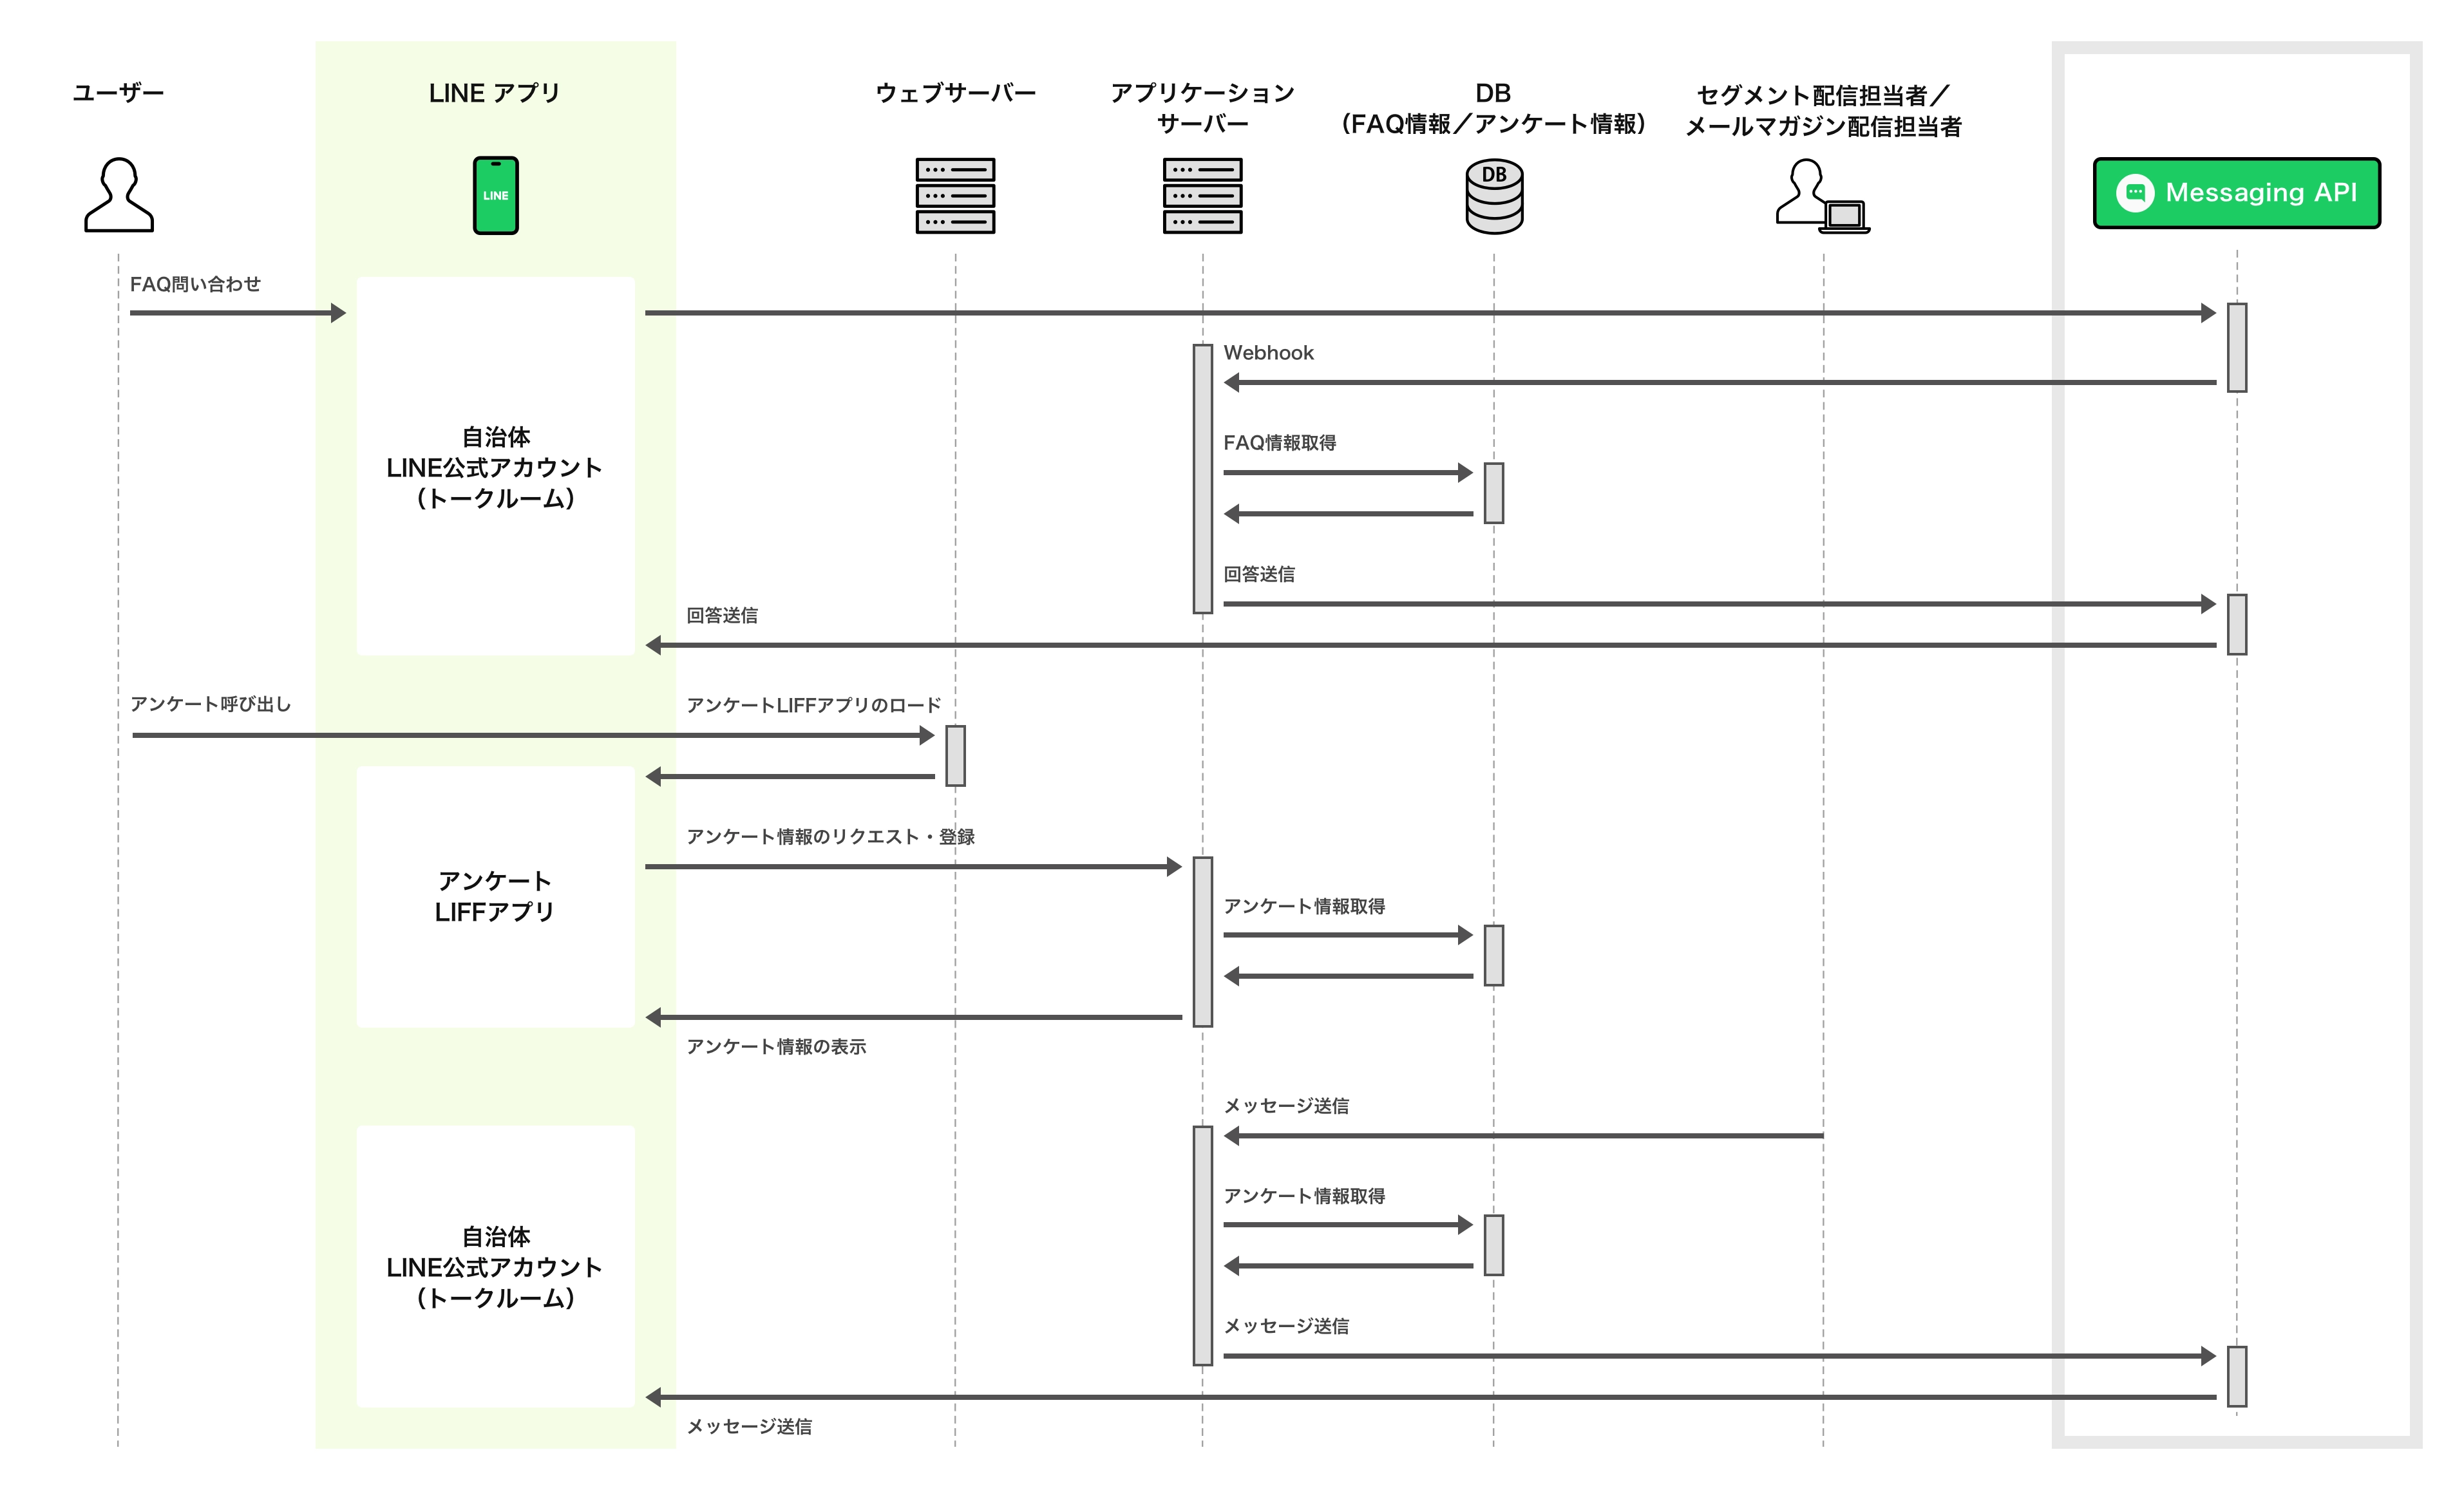 自治体情報配信機能 デモアプリケーションのシーケンス図